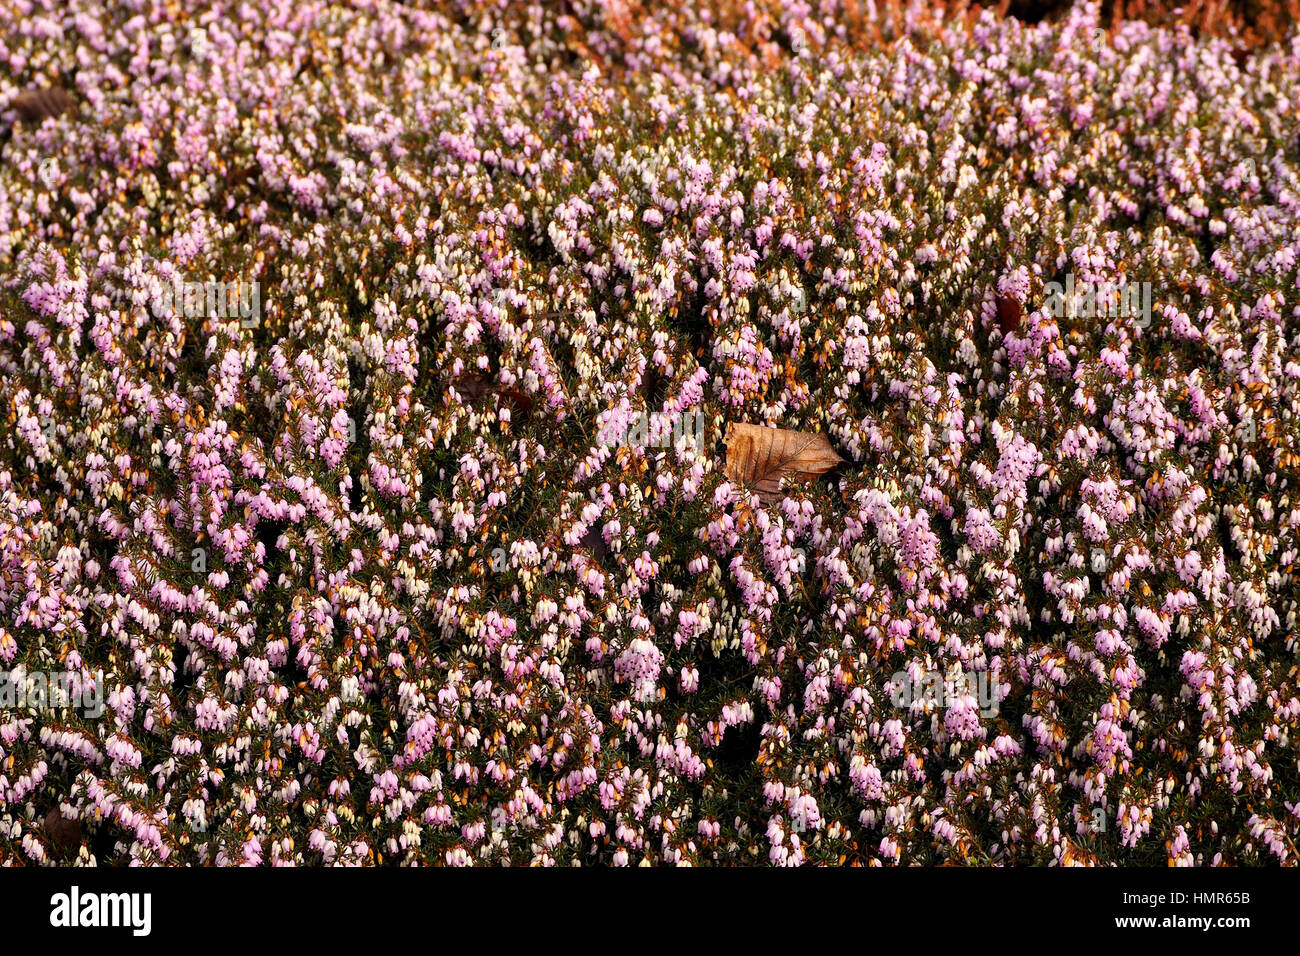 The heather Erica Carnea 'James Backhouse provides winter colour in a shady garden border. Stock Photo